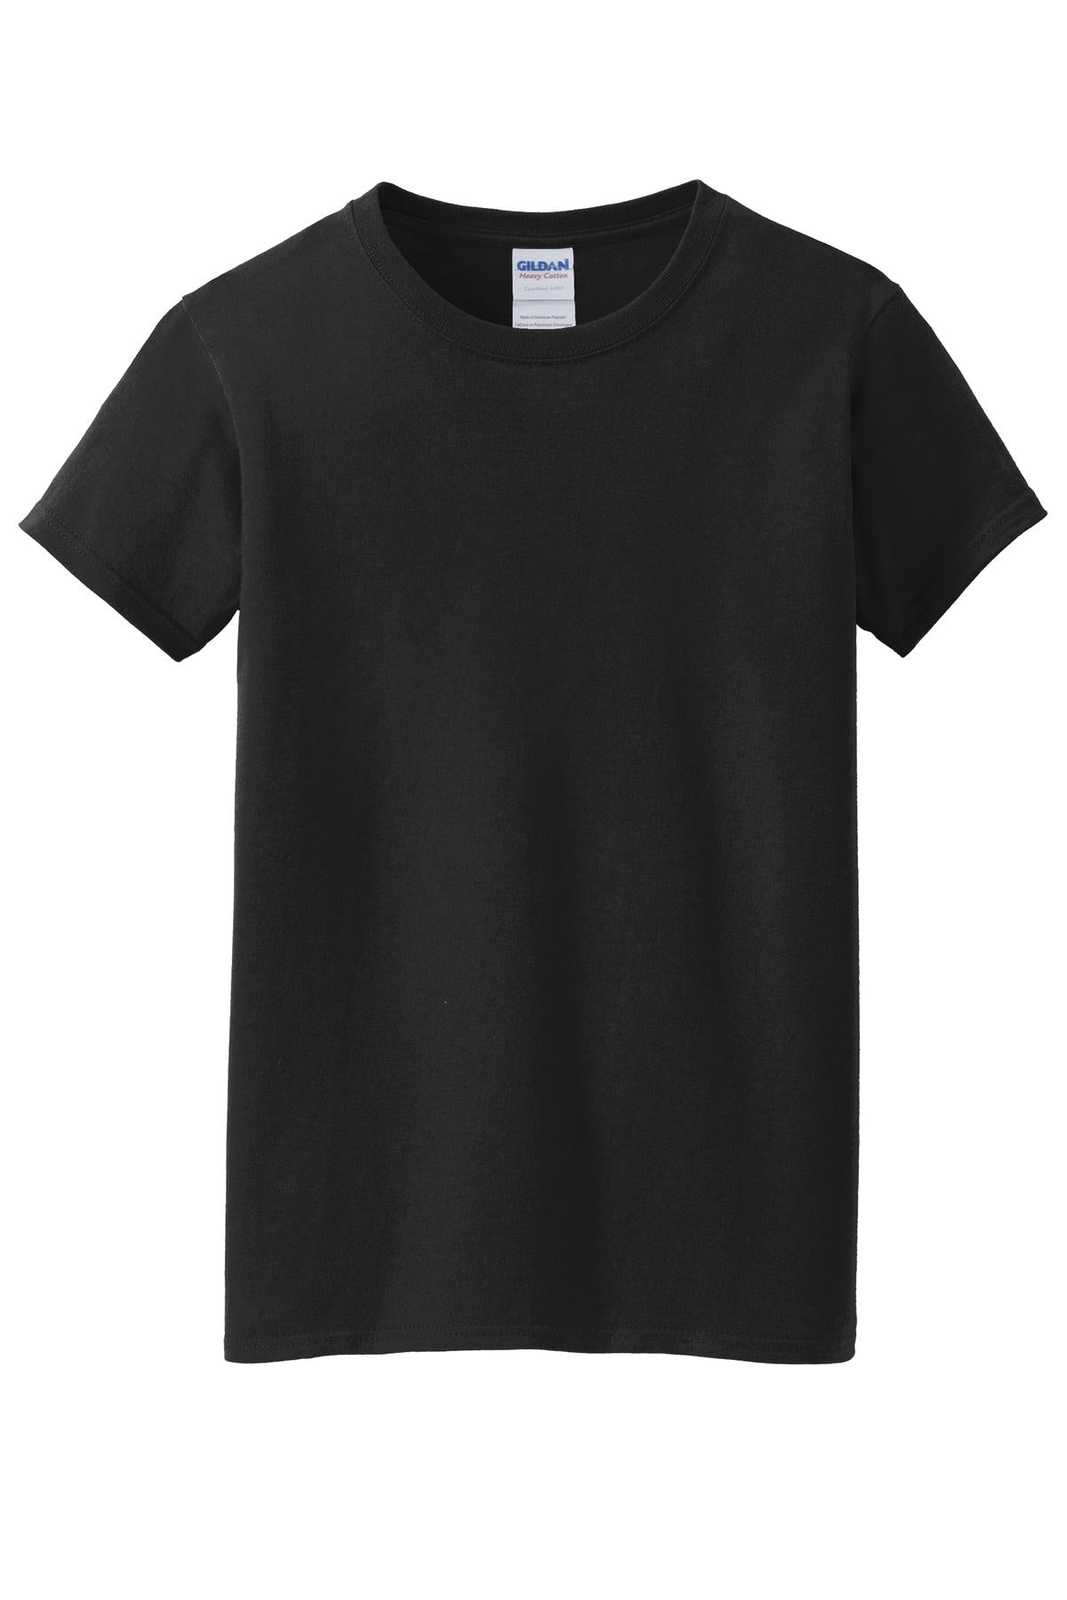 Gildan 5000L Ladies Heavy Cotton 100% Cotton T-Shirt - Black - HIT a Double